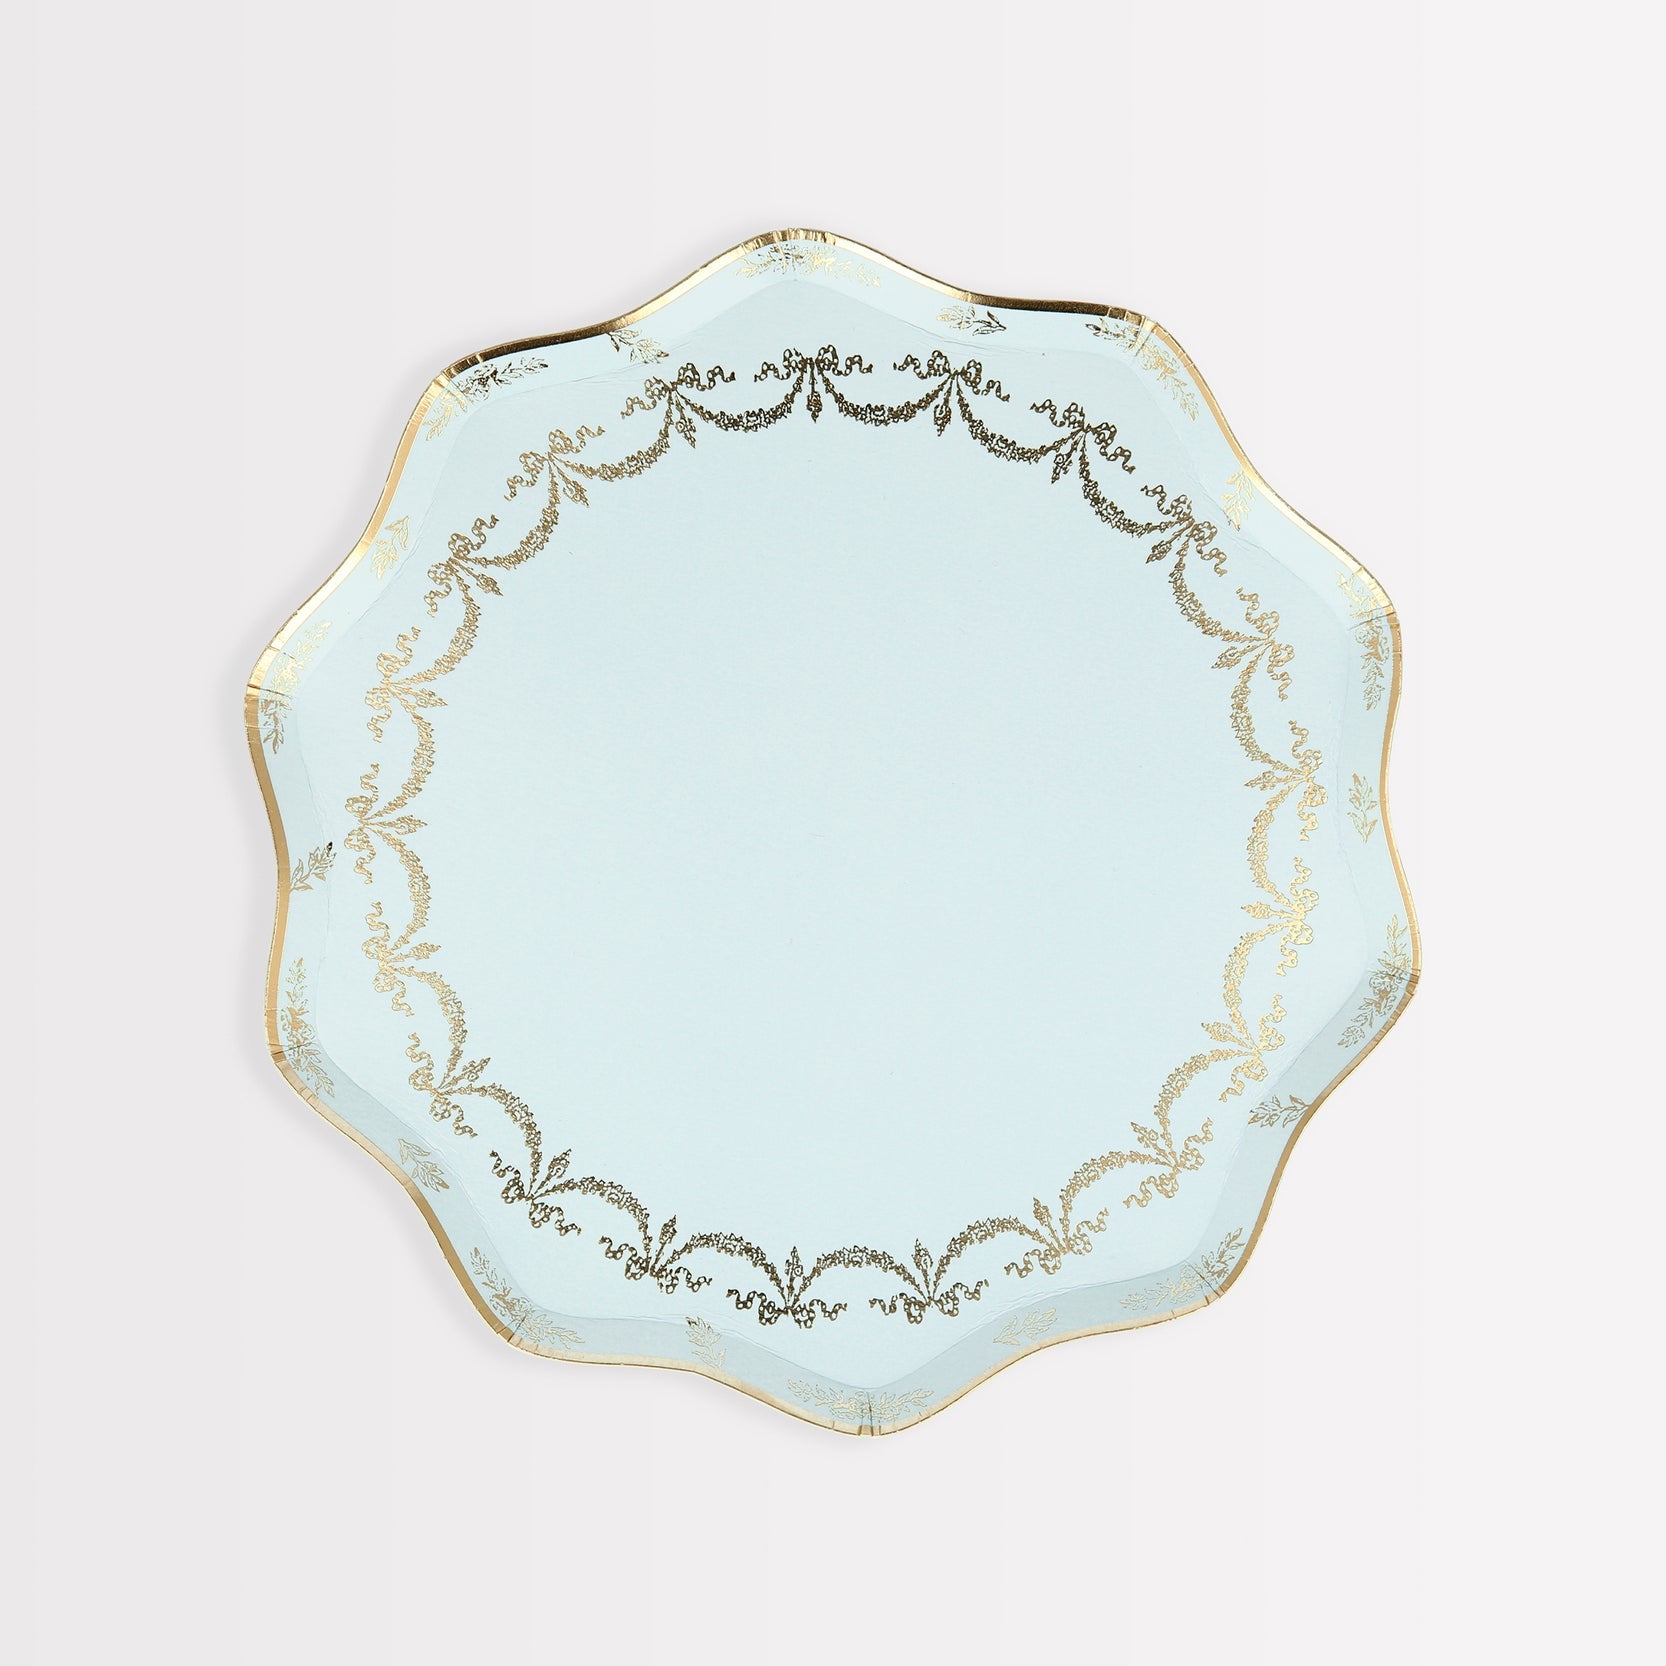 A light blue Ladurée Paris Paper Plate with gold trim perfect for serving desserts at Meri Meri.